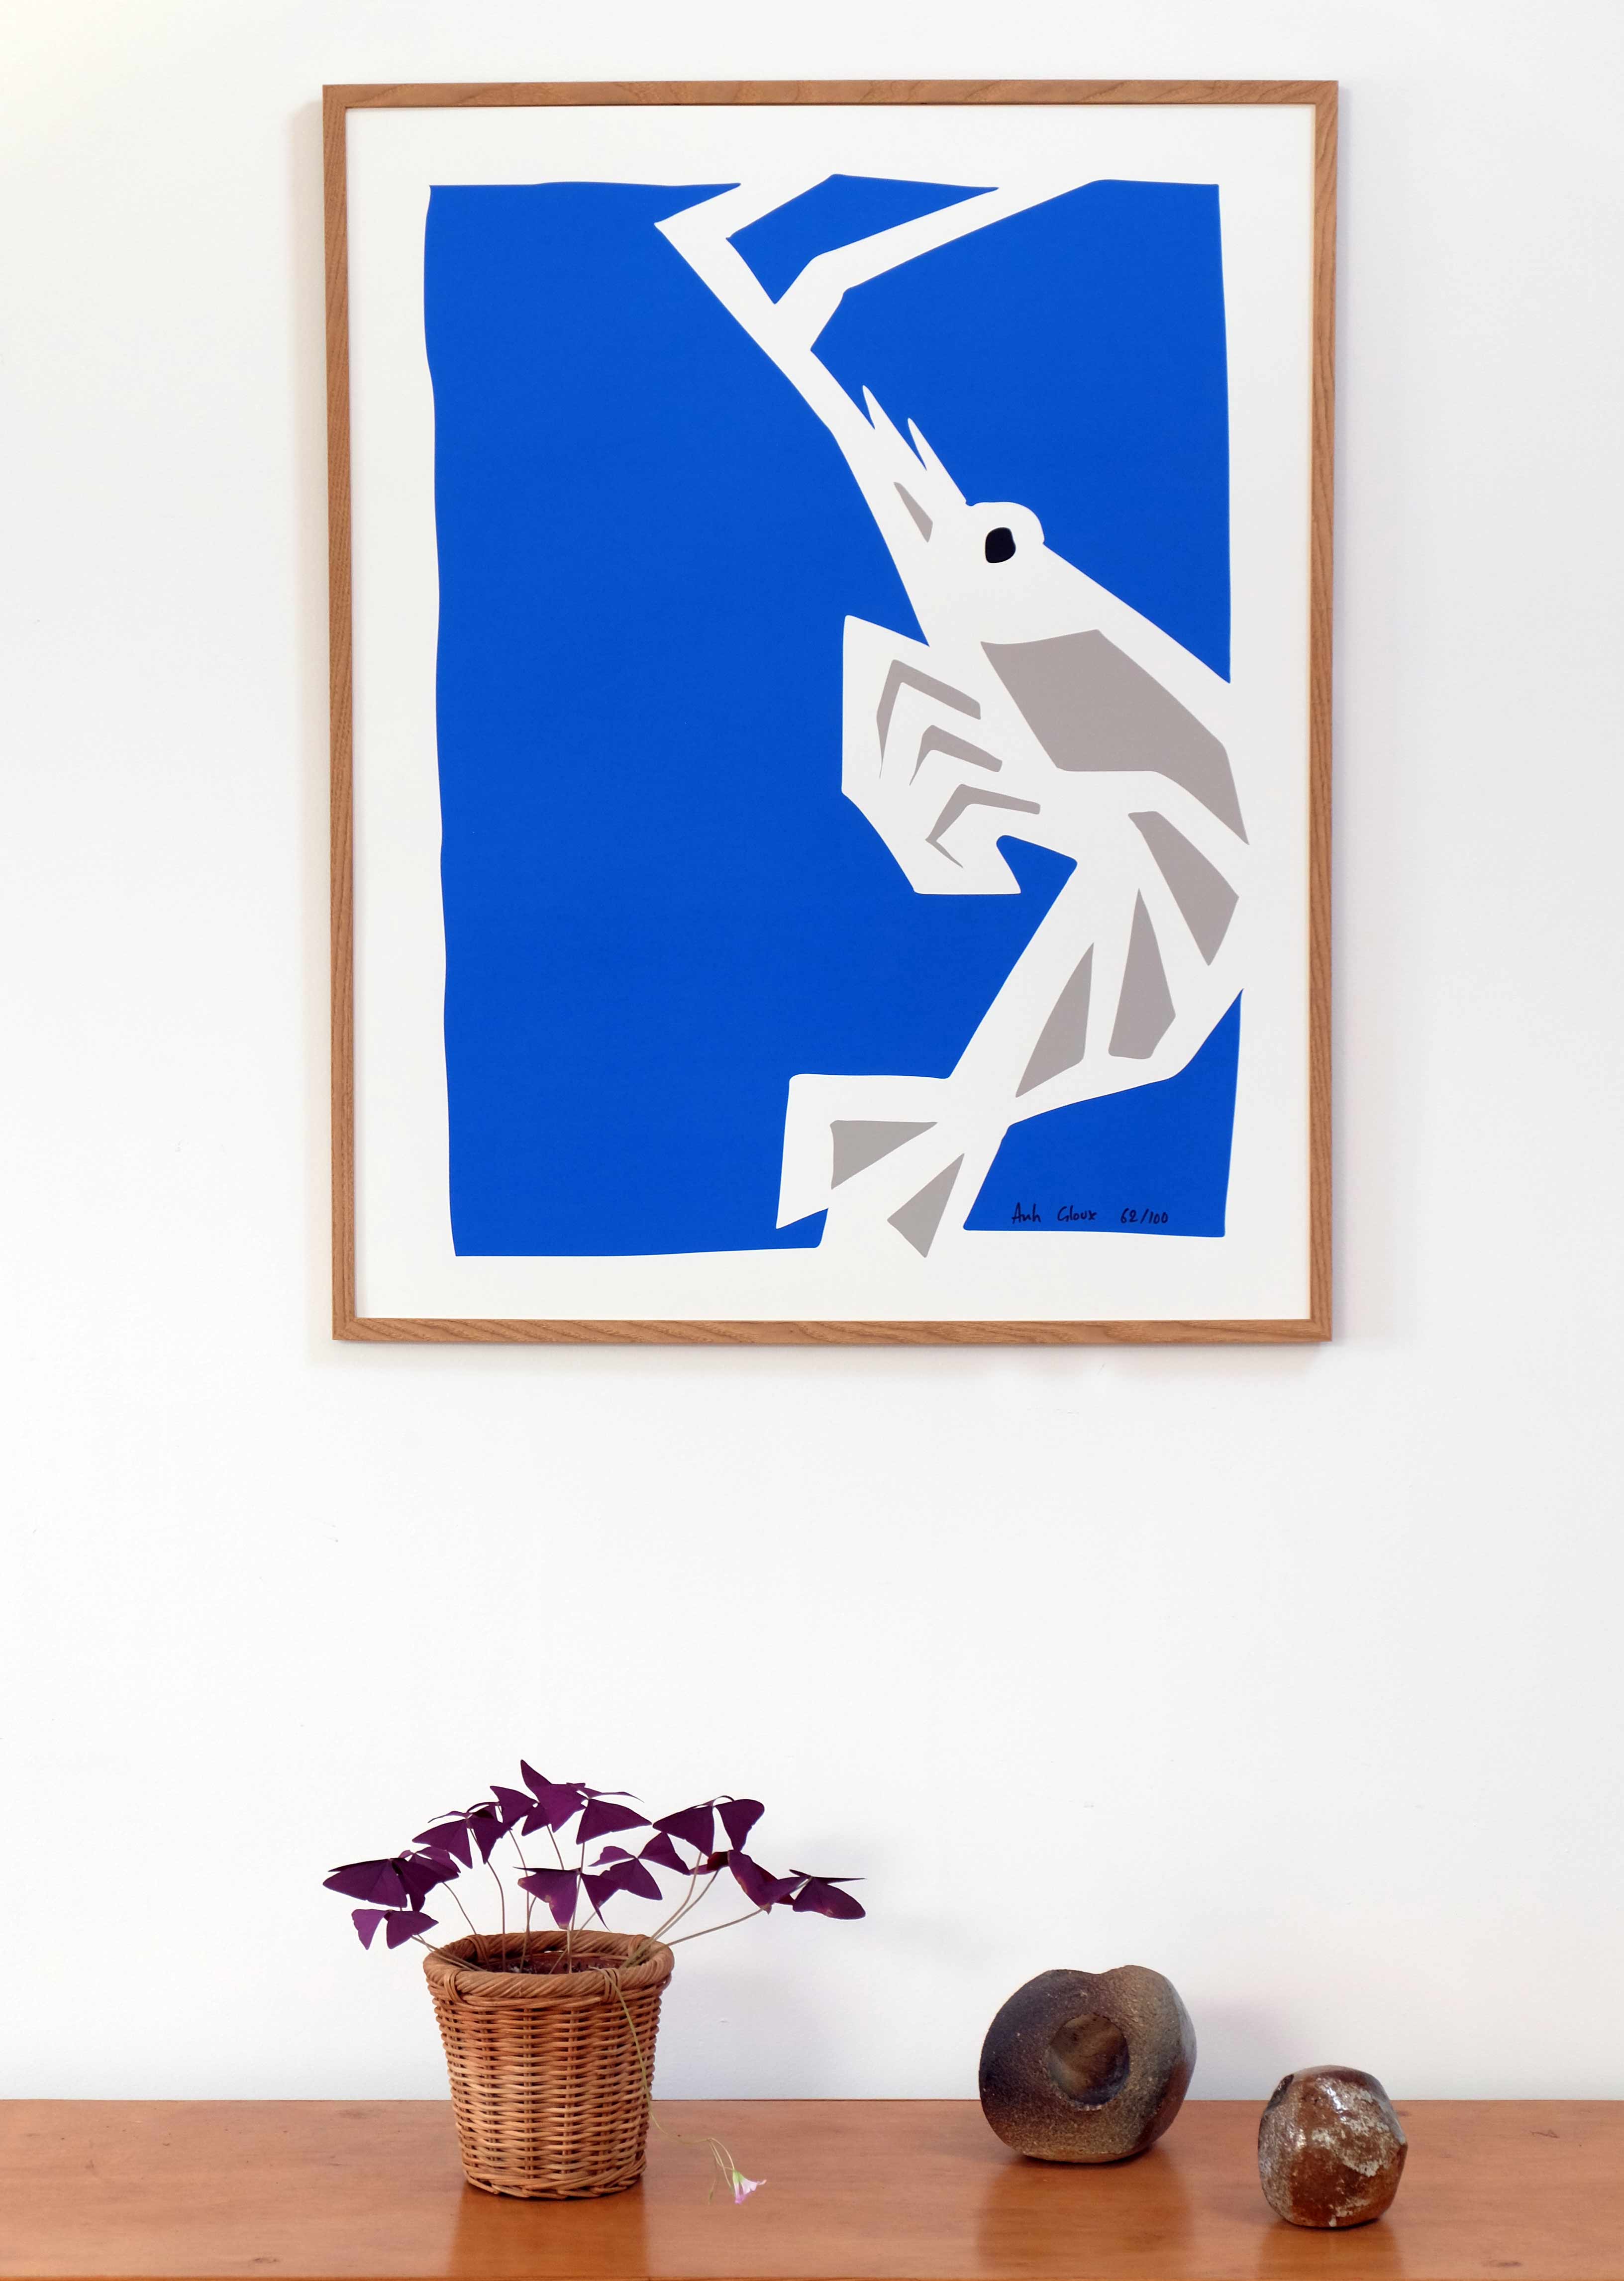 Poster affiche de decoration bretonne par Anh Gloux artiste de Concarneau. affiche crevette